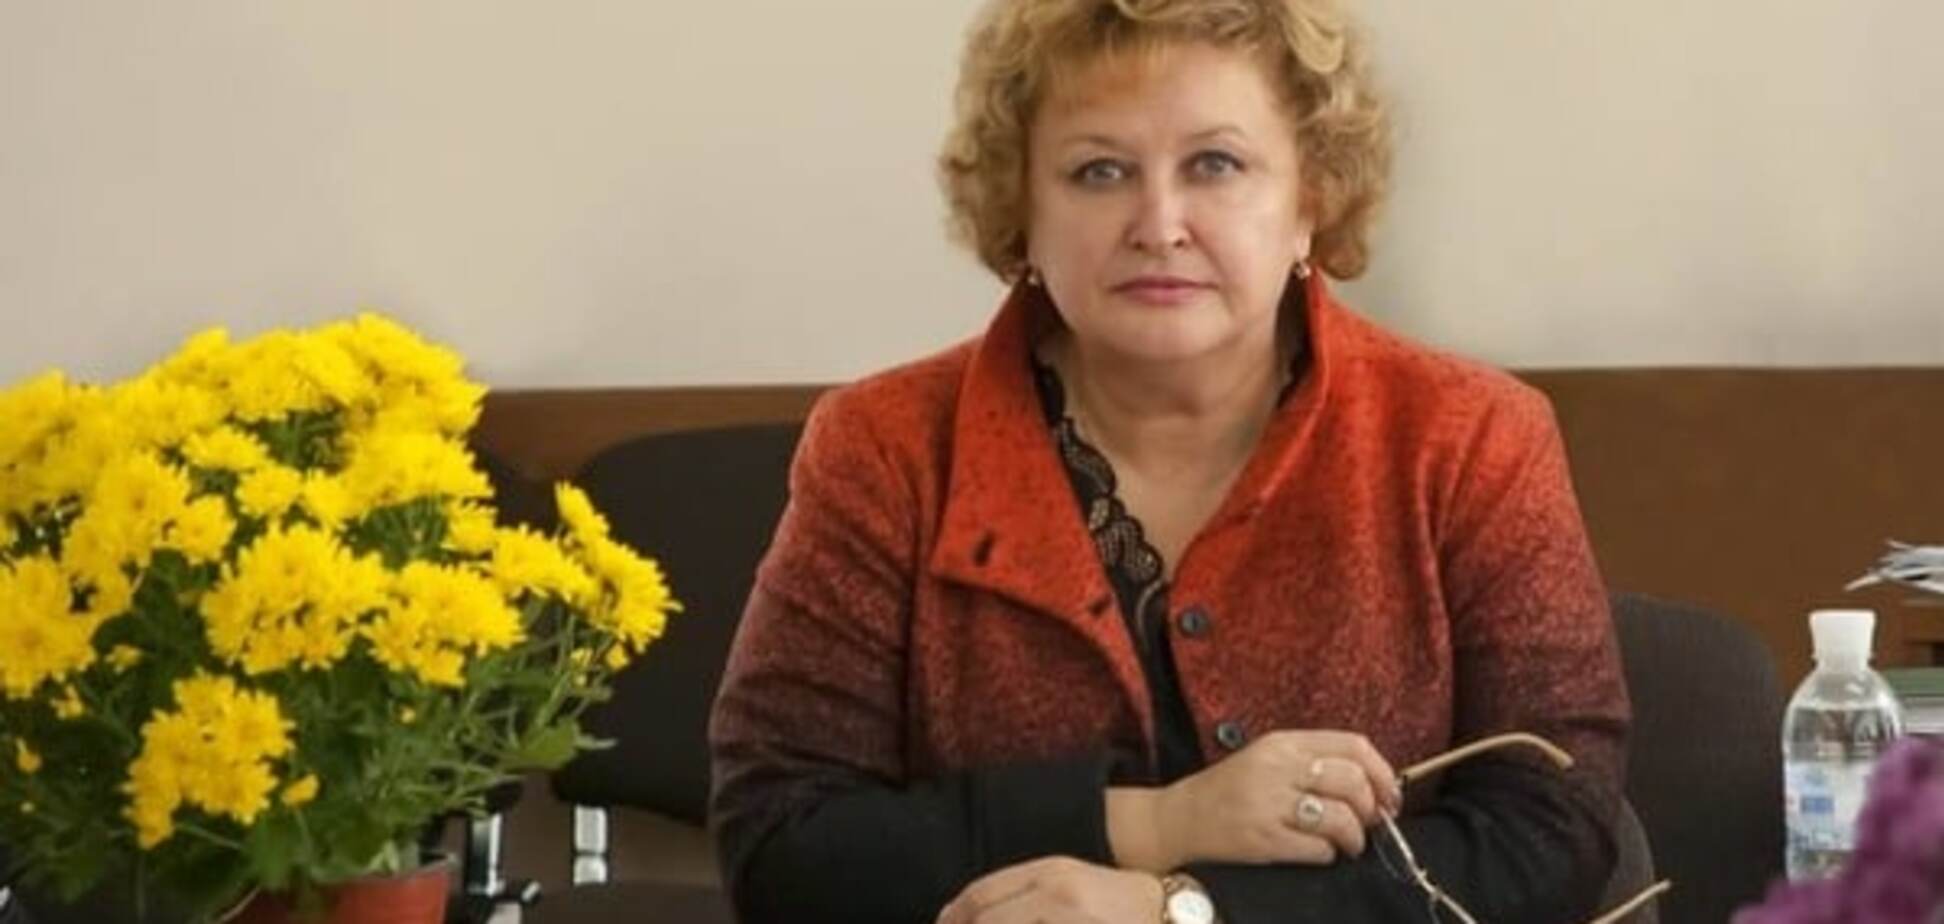 Задержанная СБУ за взяточничество ректор вуза оказалась депутатом - СМИ